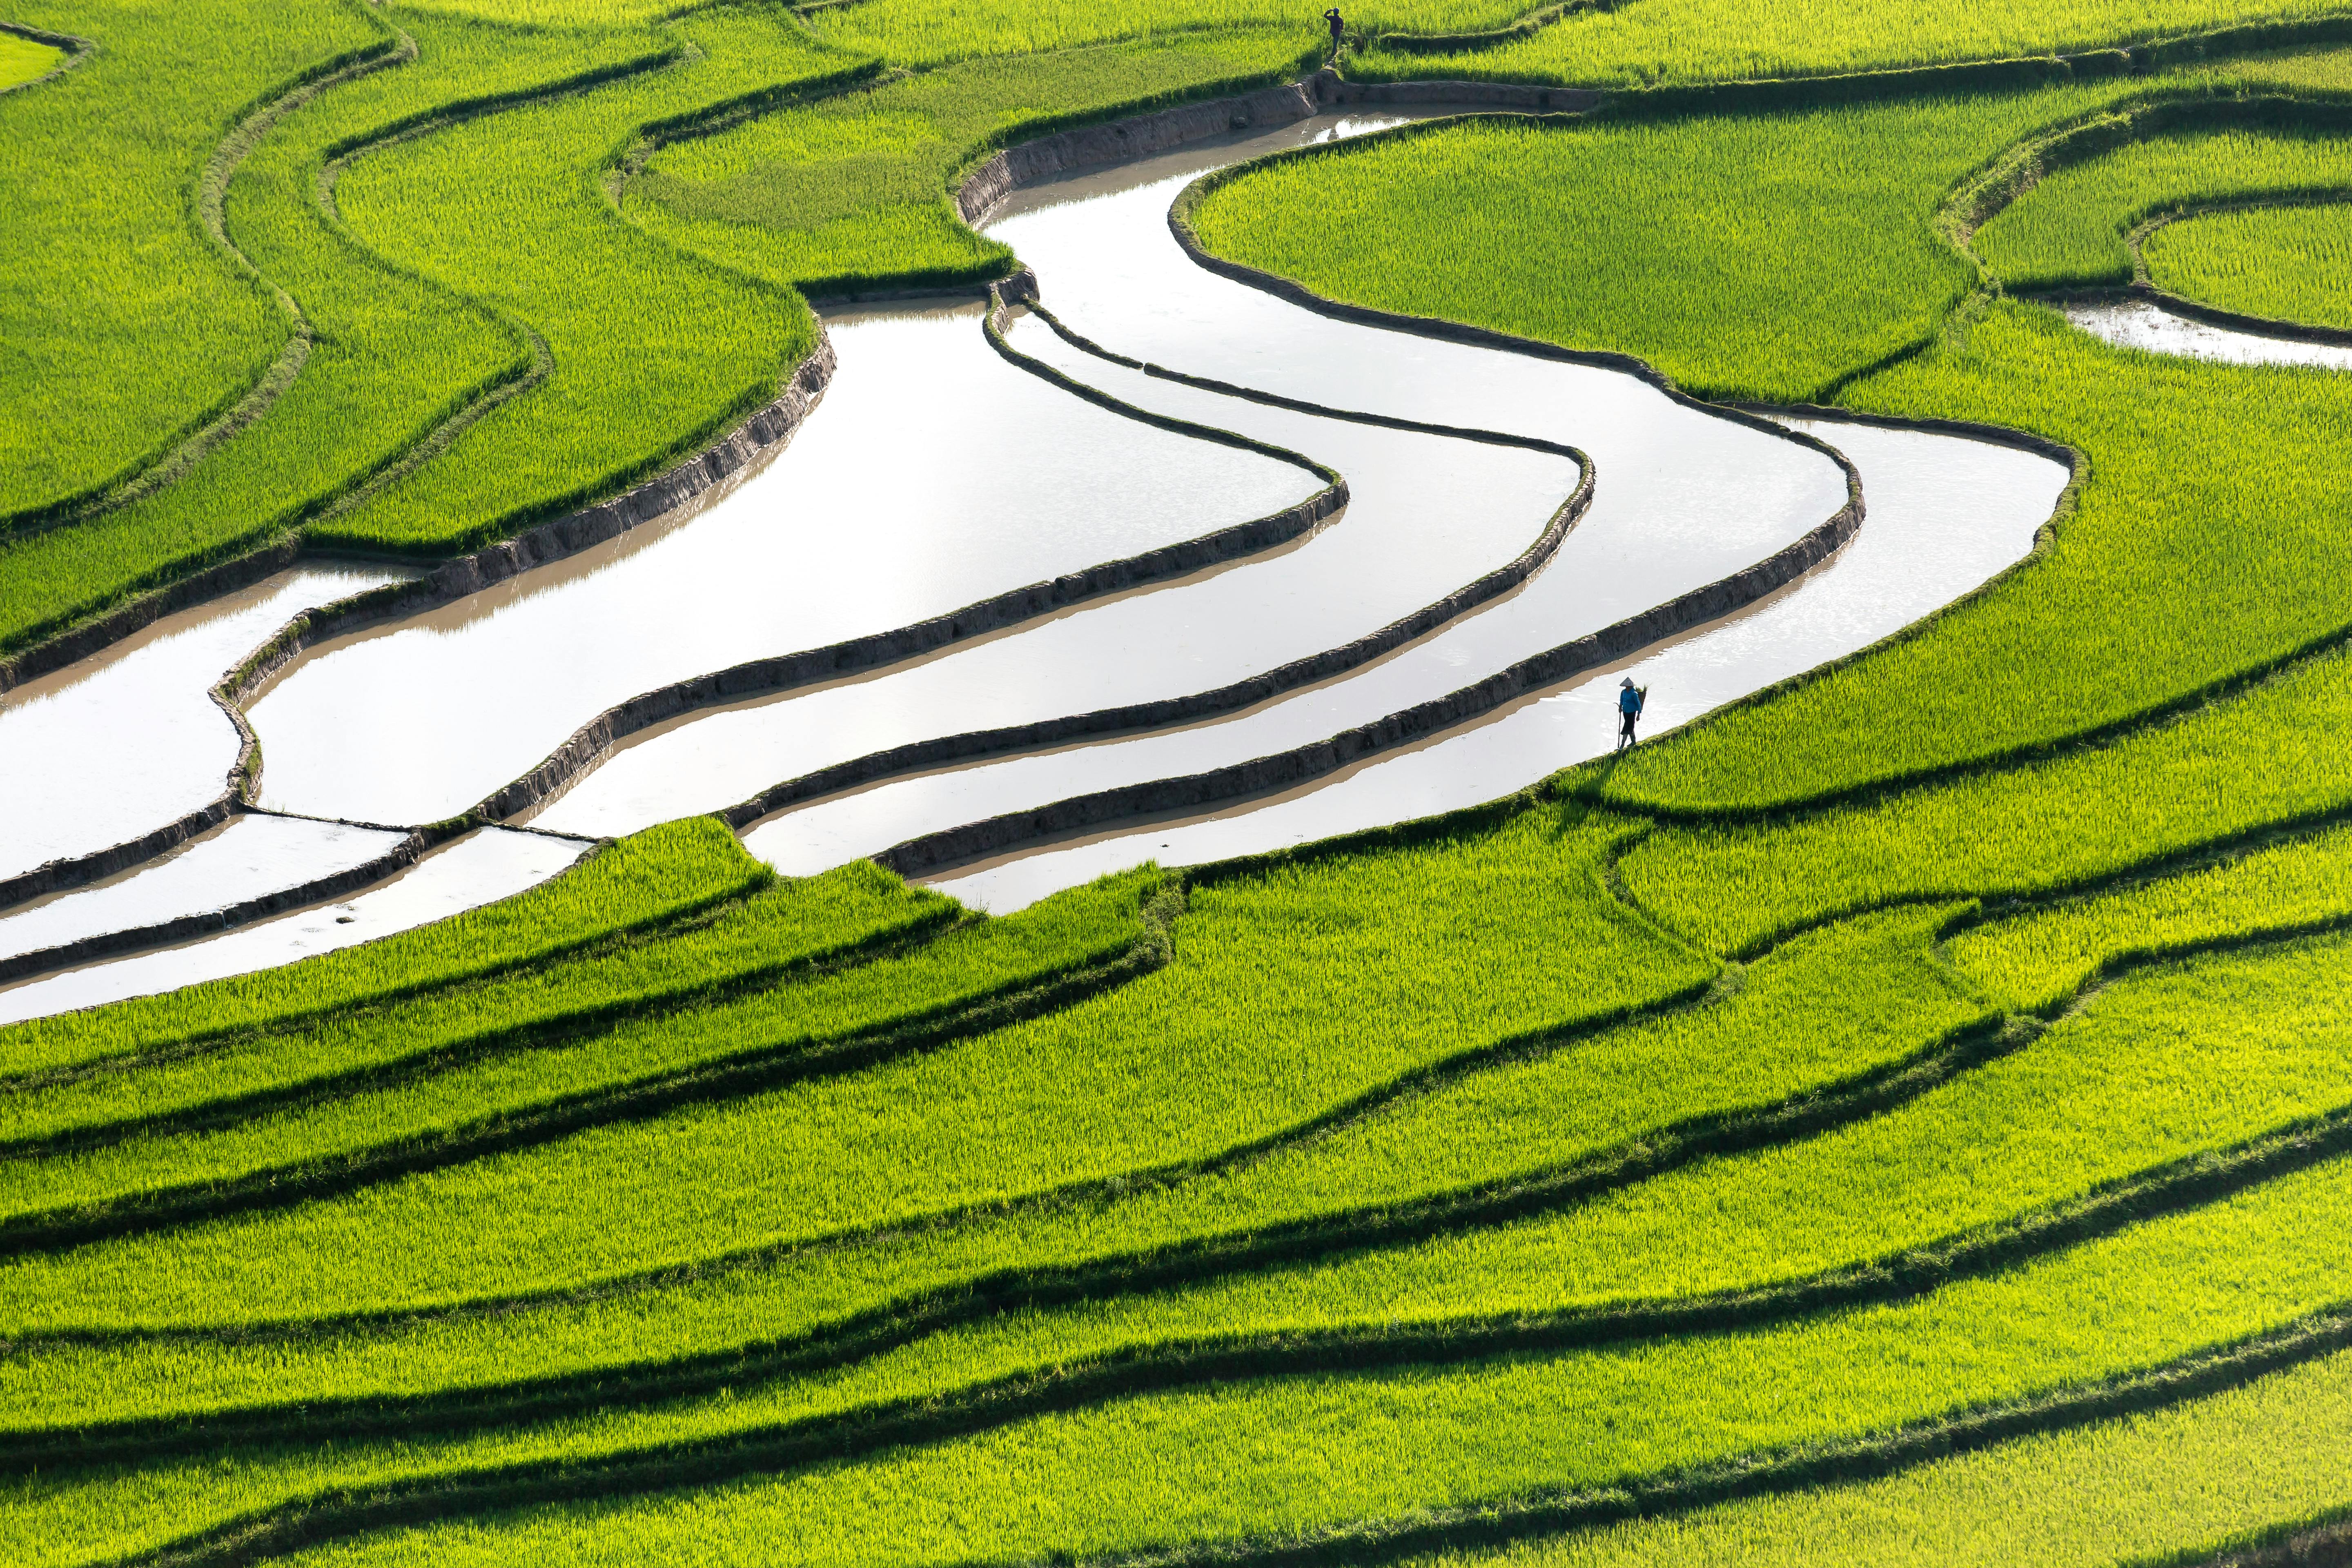 Hình ảnh đẹp về cánh đồng lúa chín ở làng quê Việt Nam - Trung Tâm Anh Ngữ  Quốc Tế ISEC Đà Nẵng